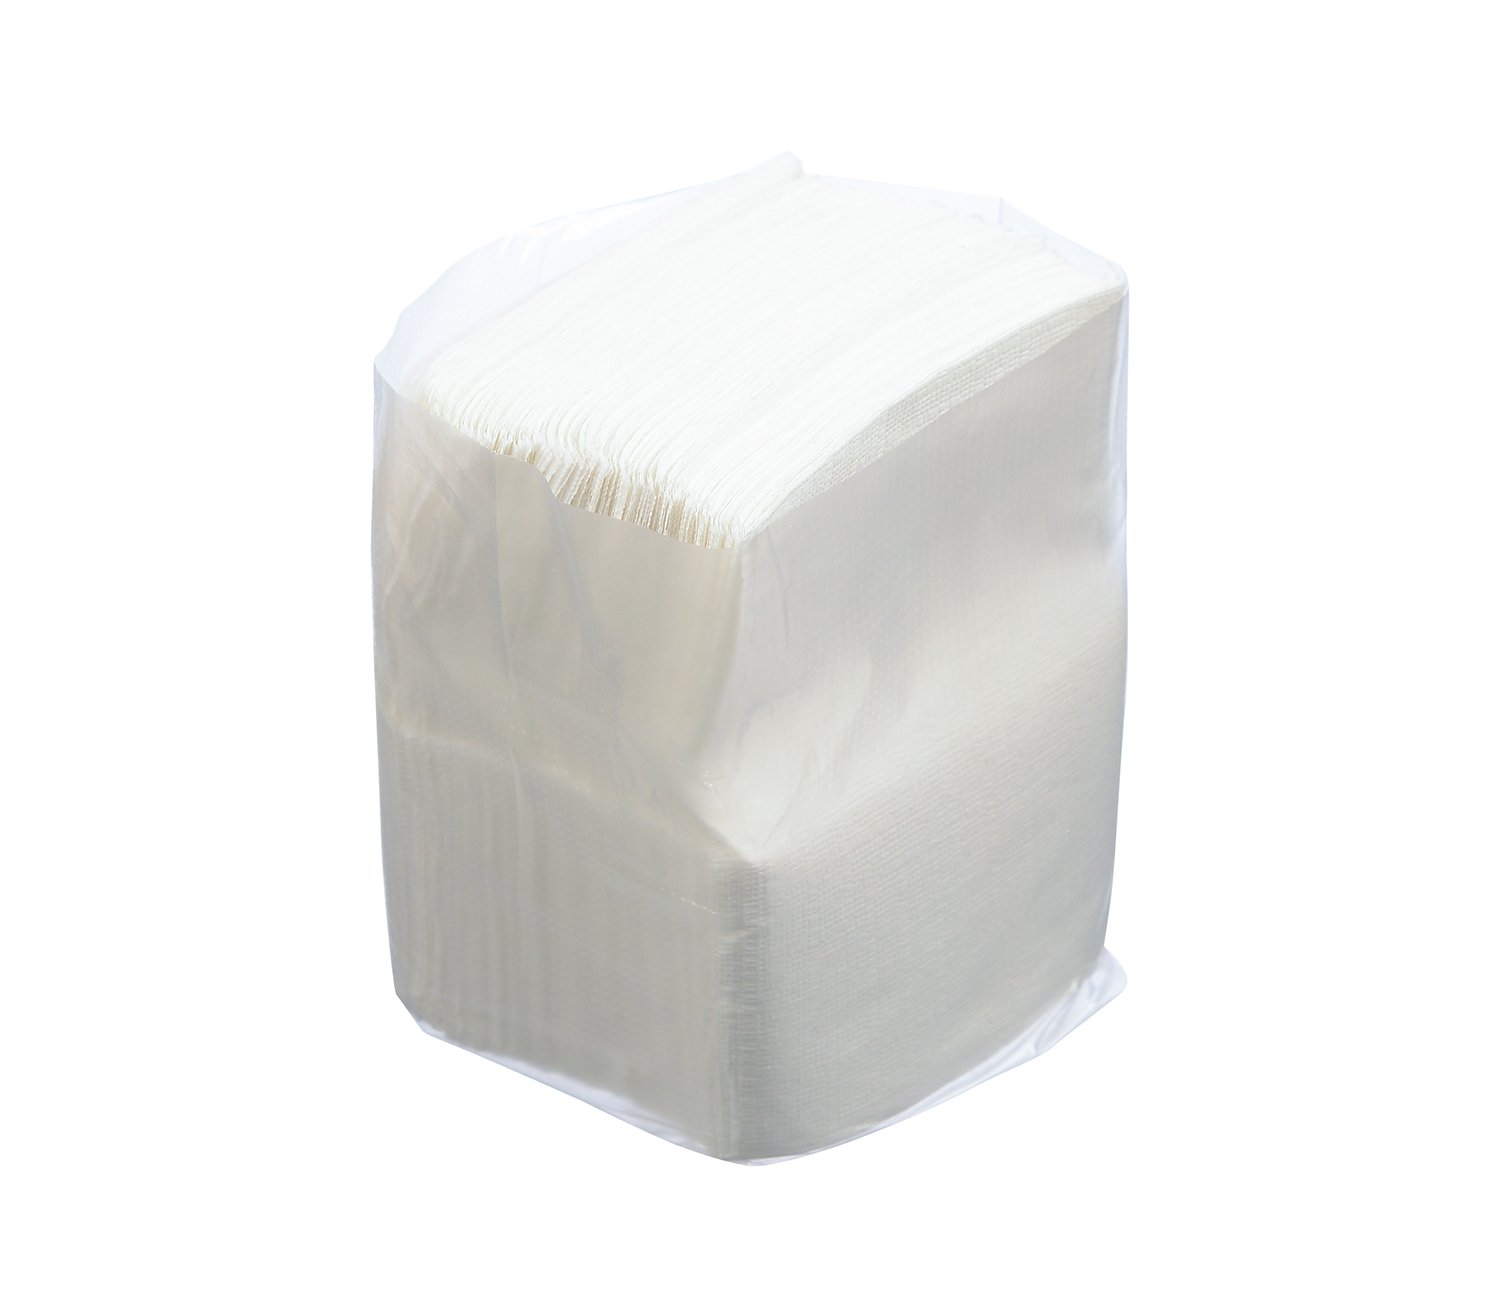 Салфетки бумажные однослойные, для настольных диспенсеров. Бумажные салфетки могут быть использованы также в целях личной гигиены. В упаковке 200 салфеток, размер 18х17 см. В коробке 48 упаковок.